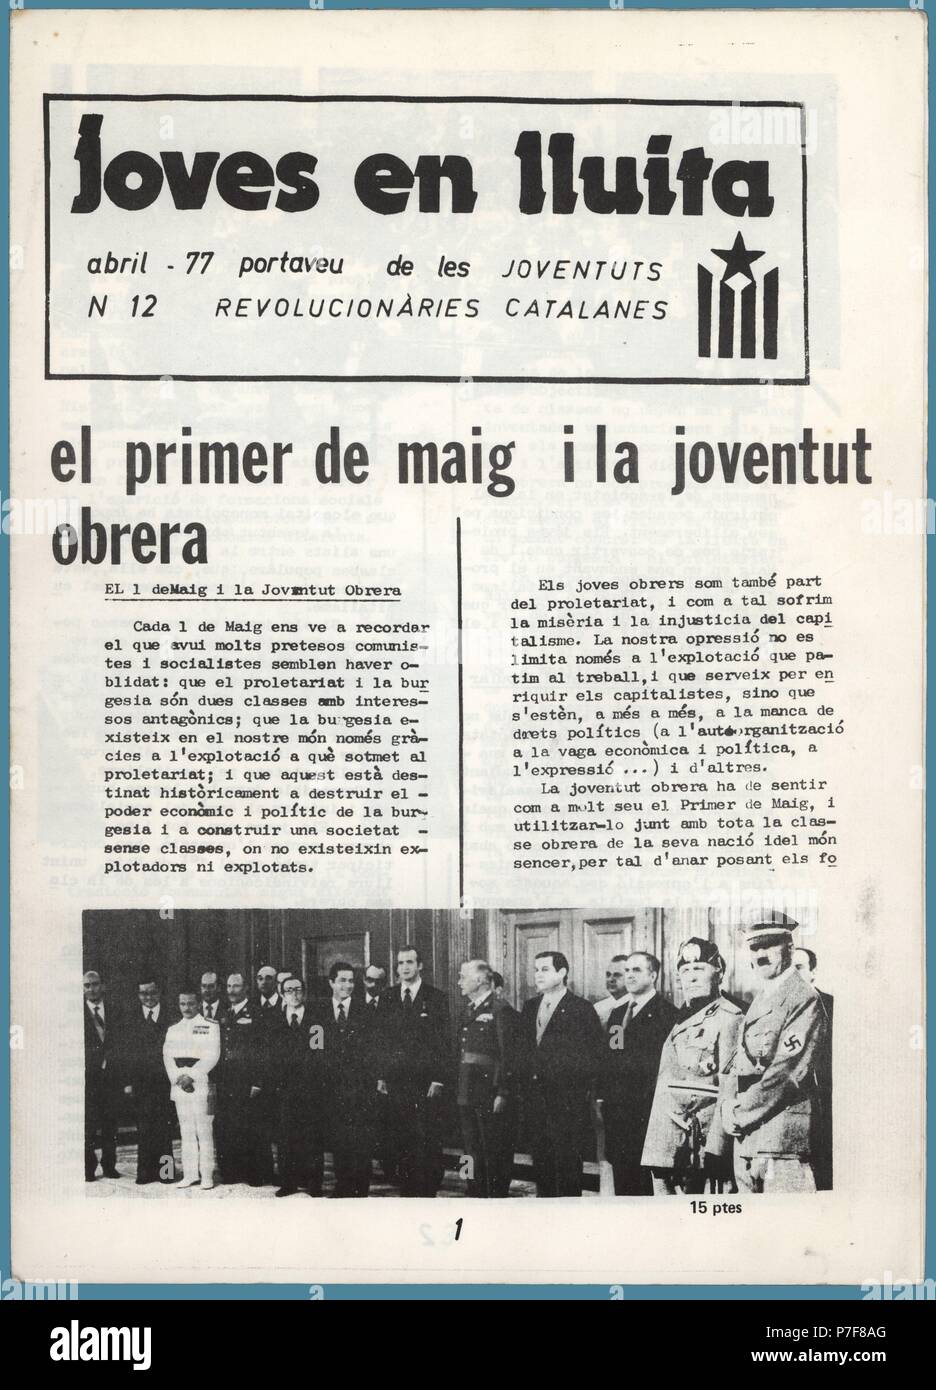 Portada de la revista clandestina Joves en lluita, portavoz de las Joventuts Revolucionàries Catalanes, editada en Barcelona, abril de 1977. Stock Photo